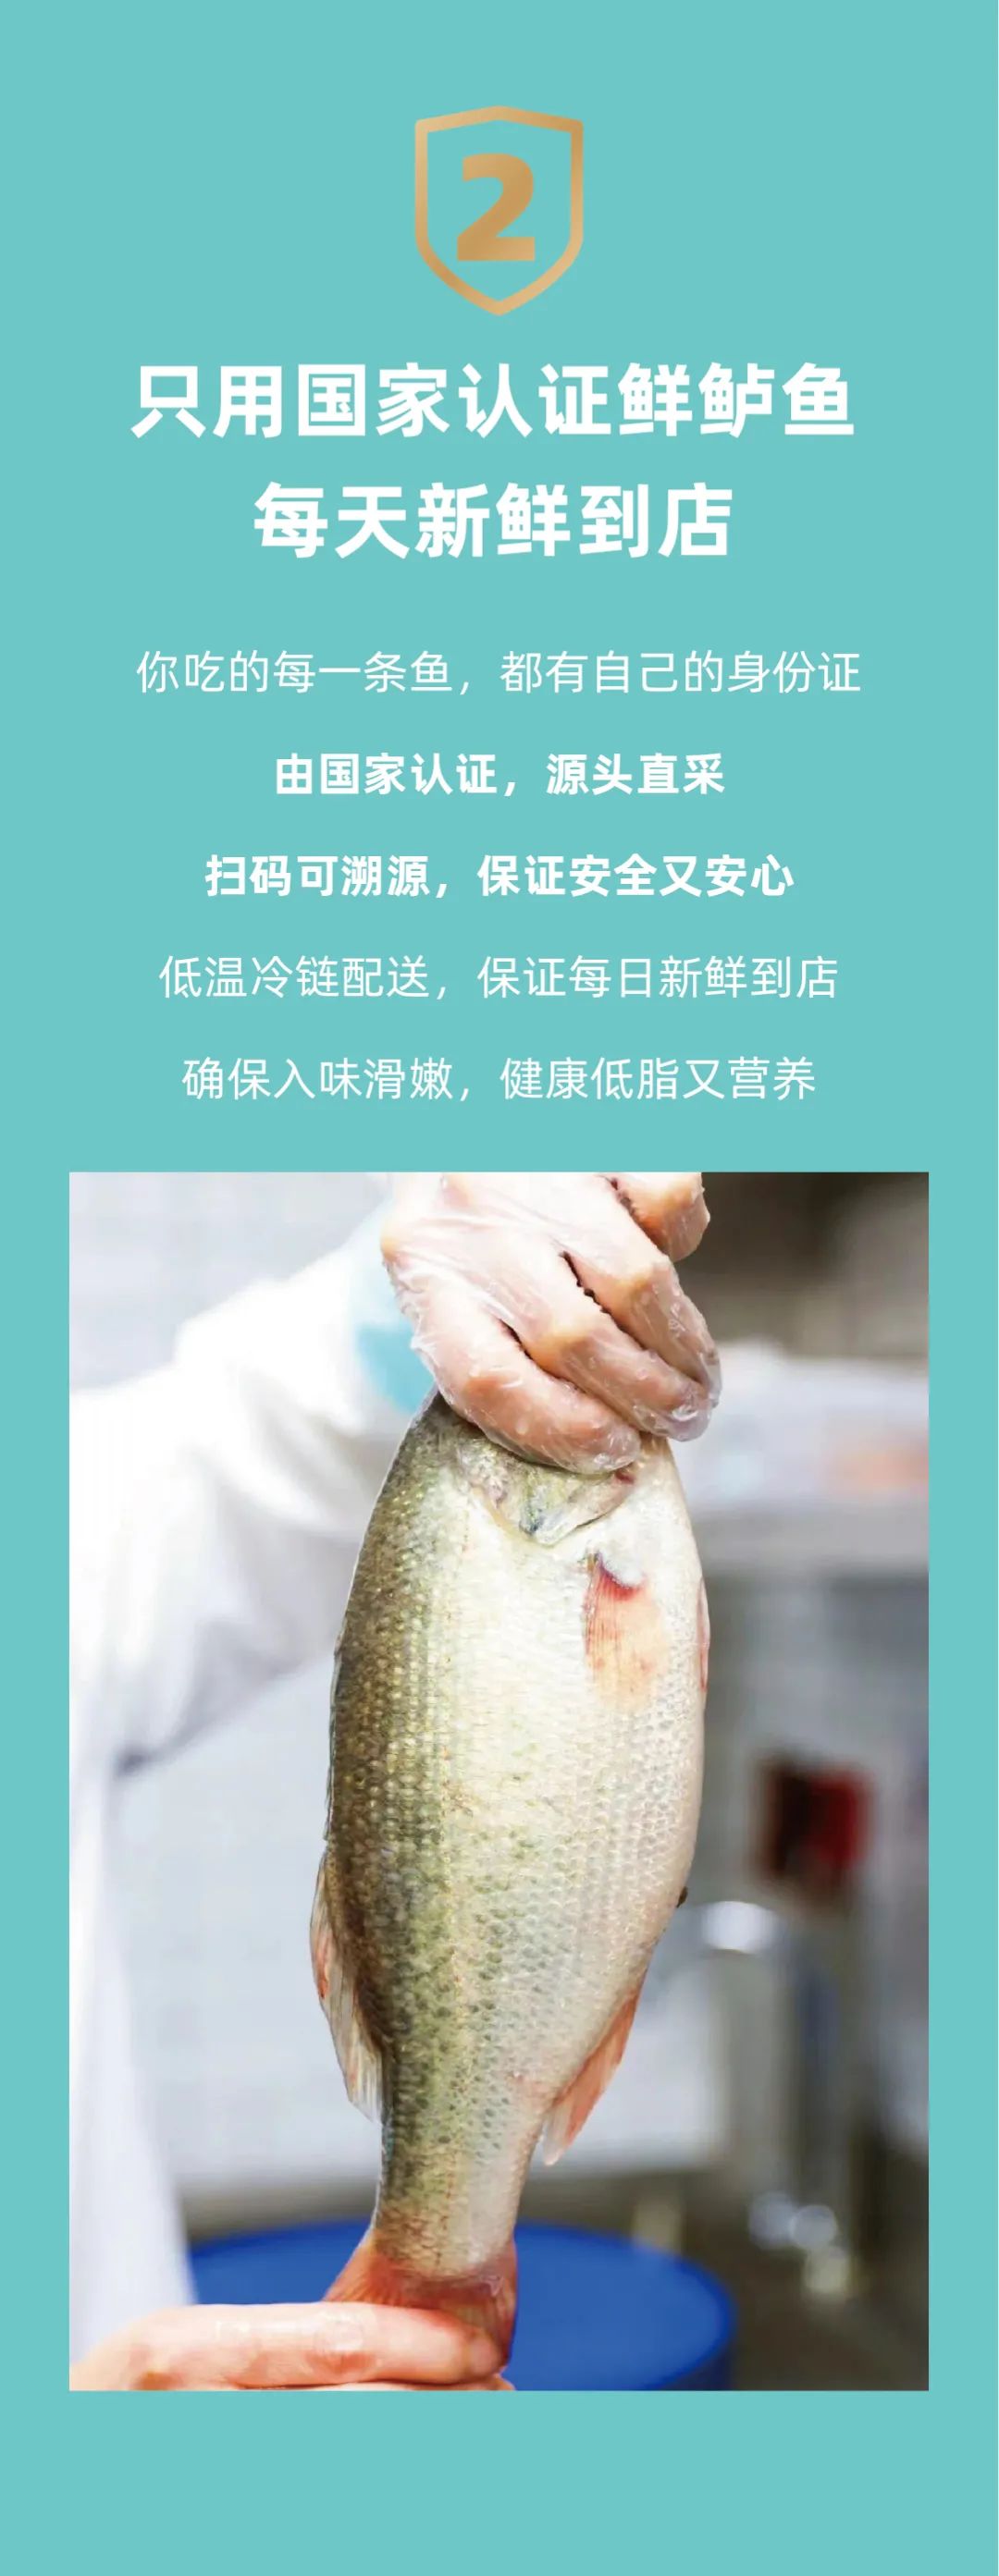 姚姚酸菜鱼：按照国家标准研制新酸菜，新鲜安全